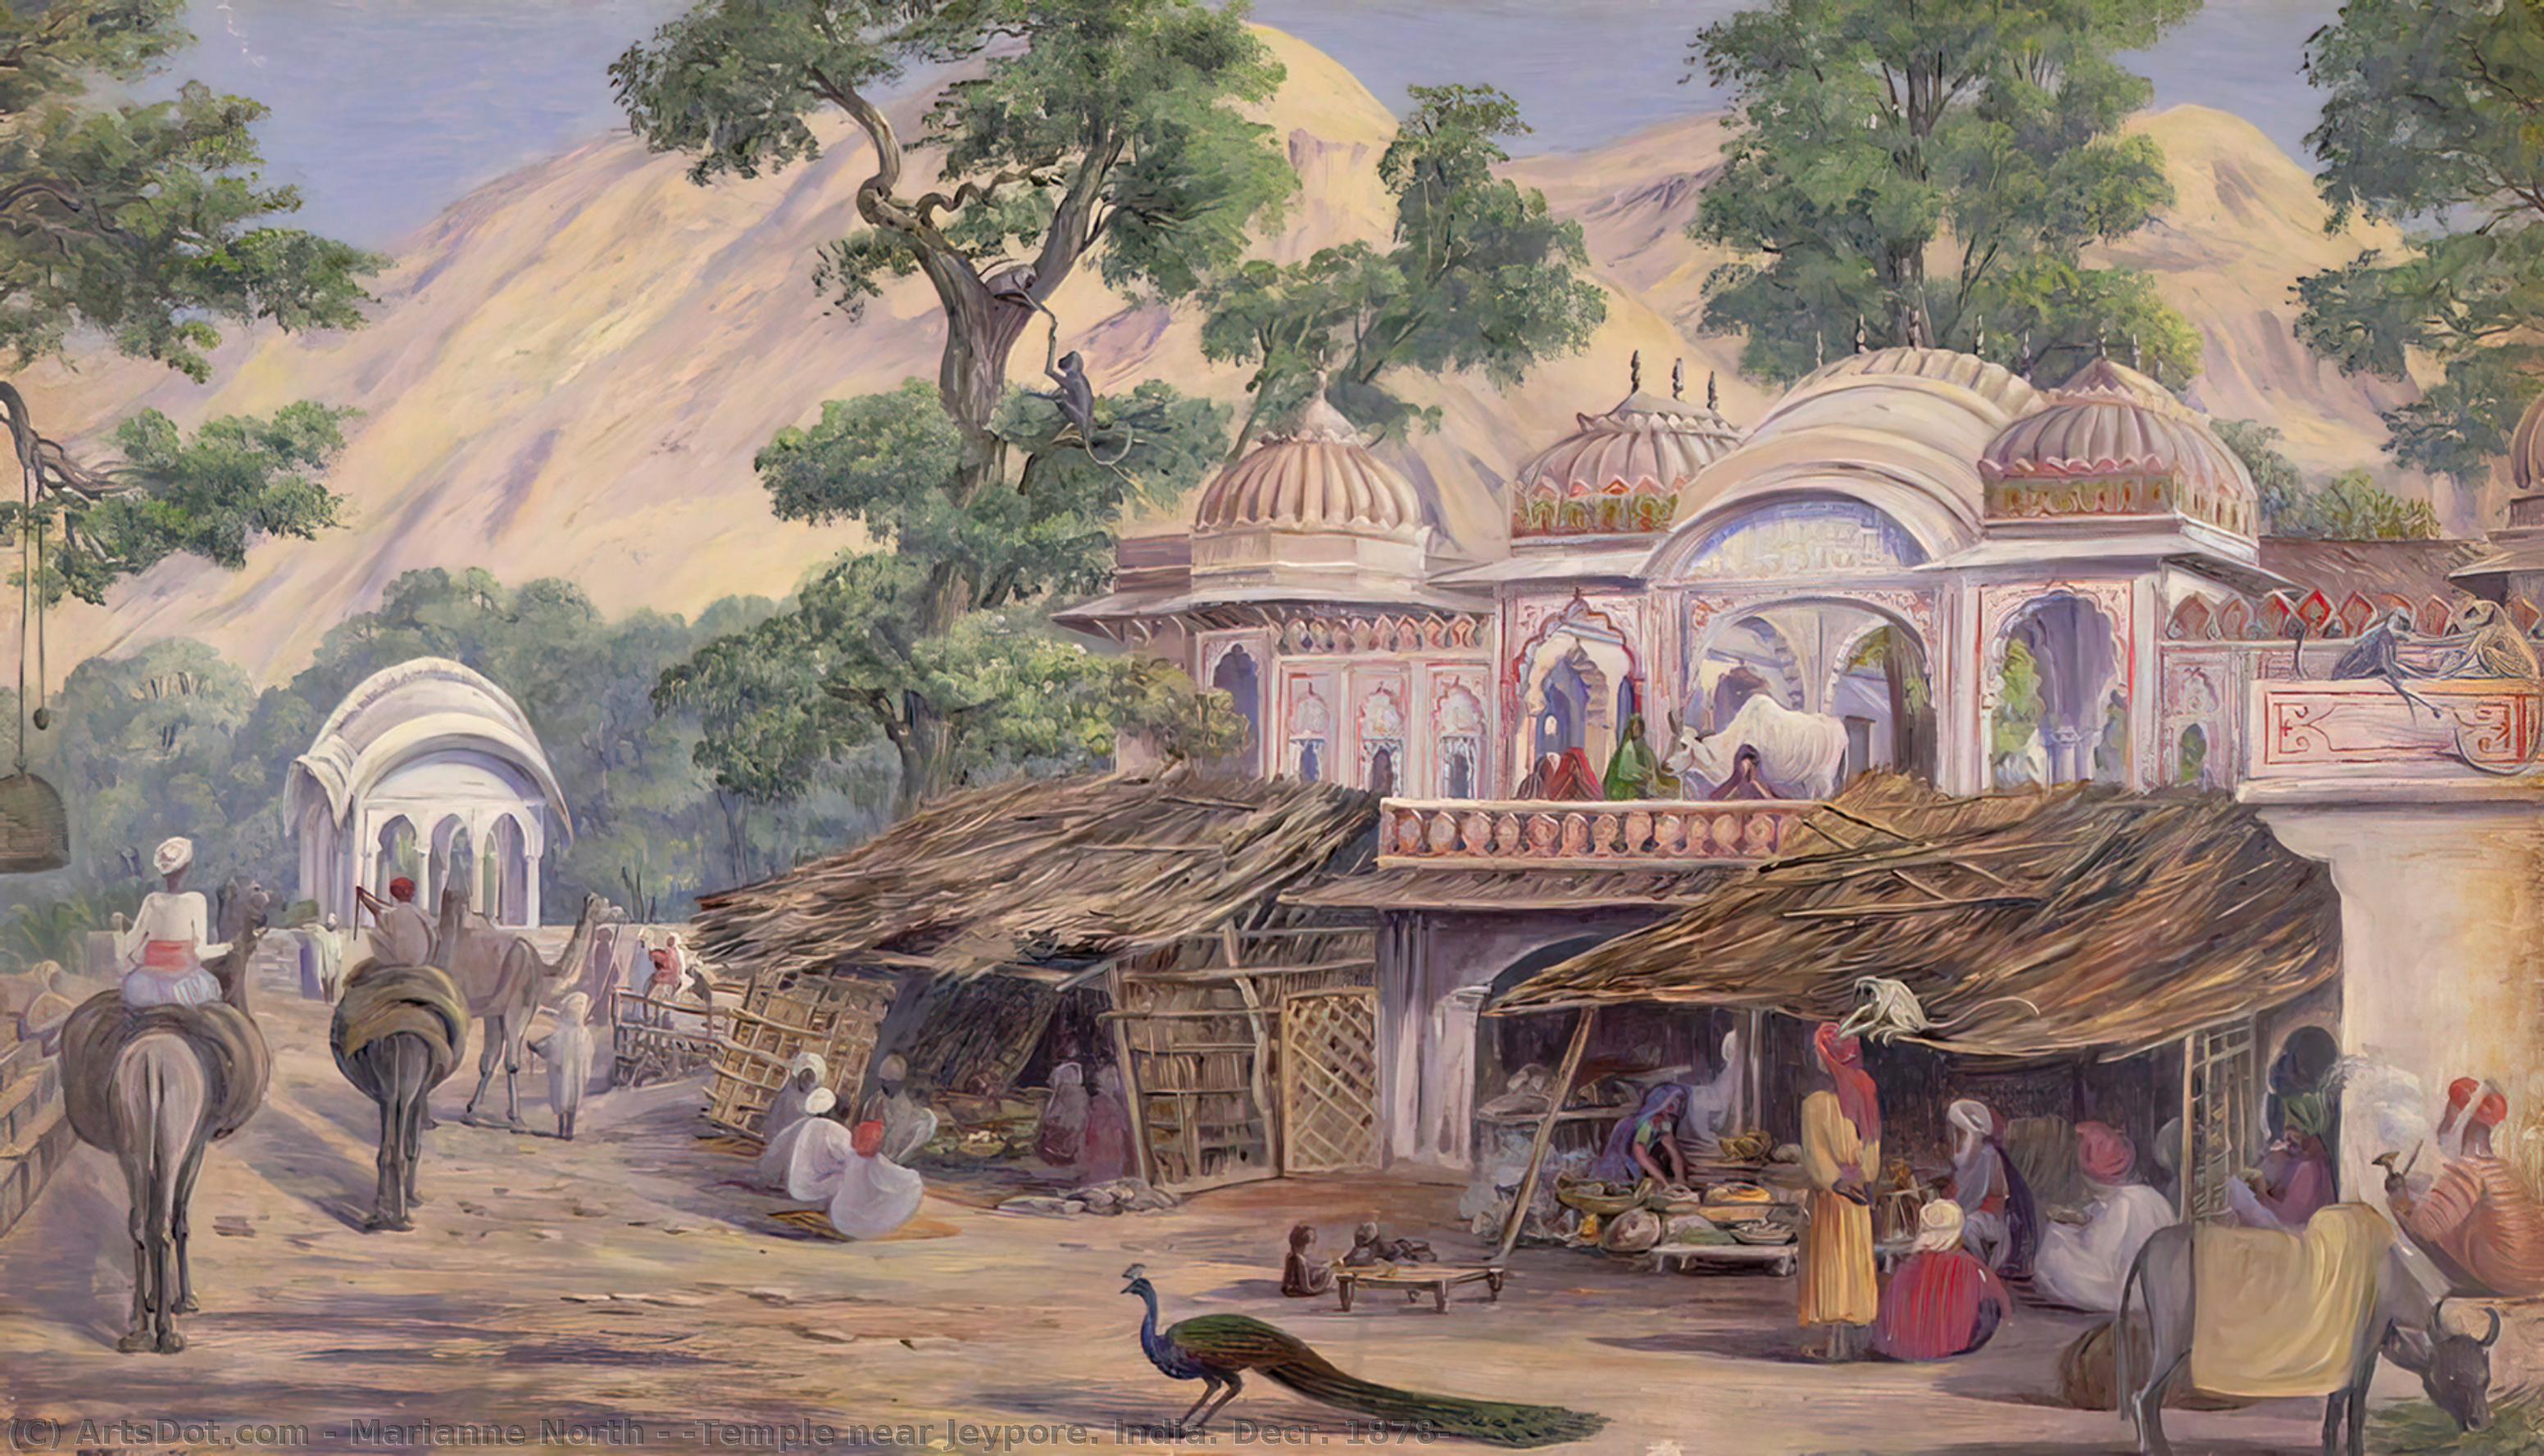 Pedir Reproducciones De Arte `Temple cerca de Jeypore. India. Decr. 1878 `, 1878 de Marianne North (1830-1890, United Kingdom) | ArtsDot.com